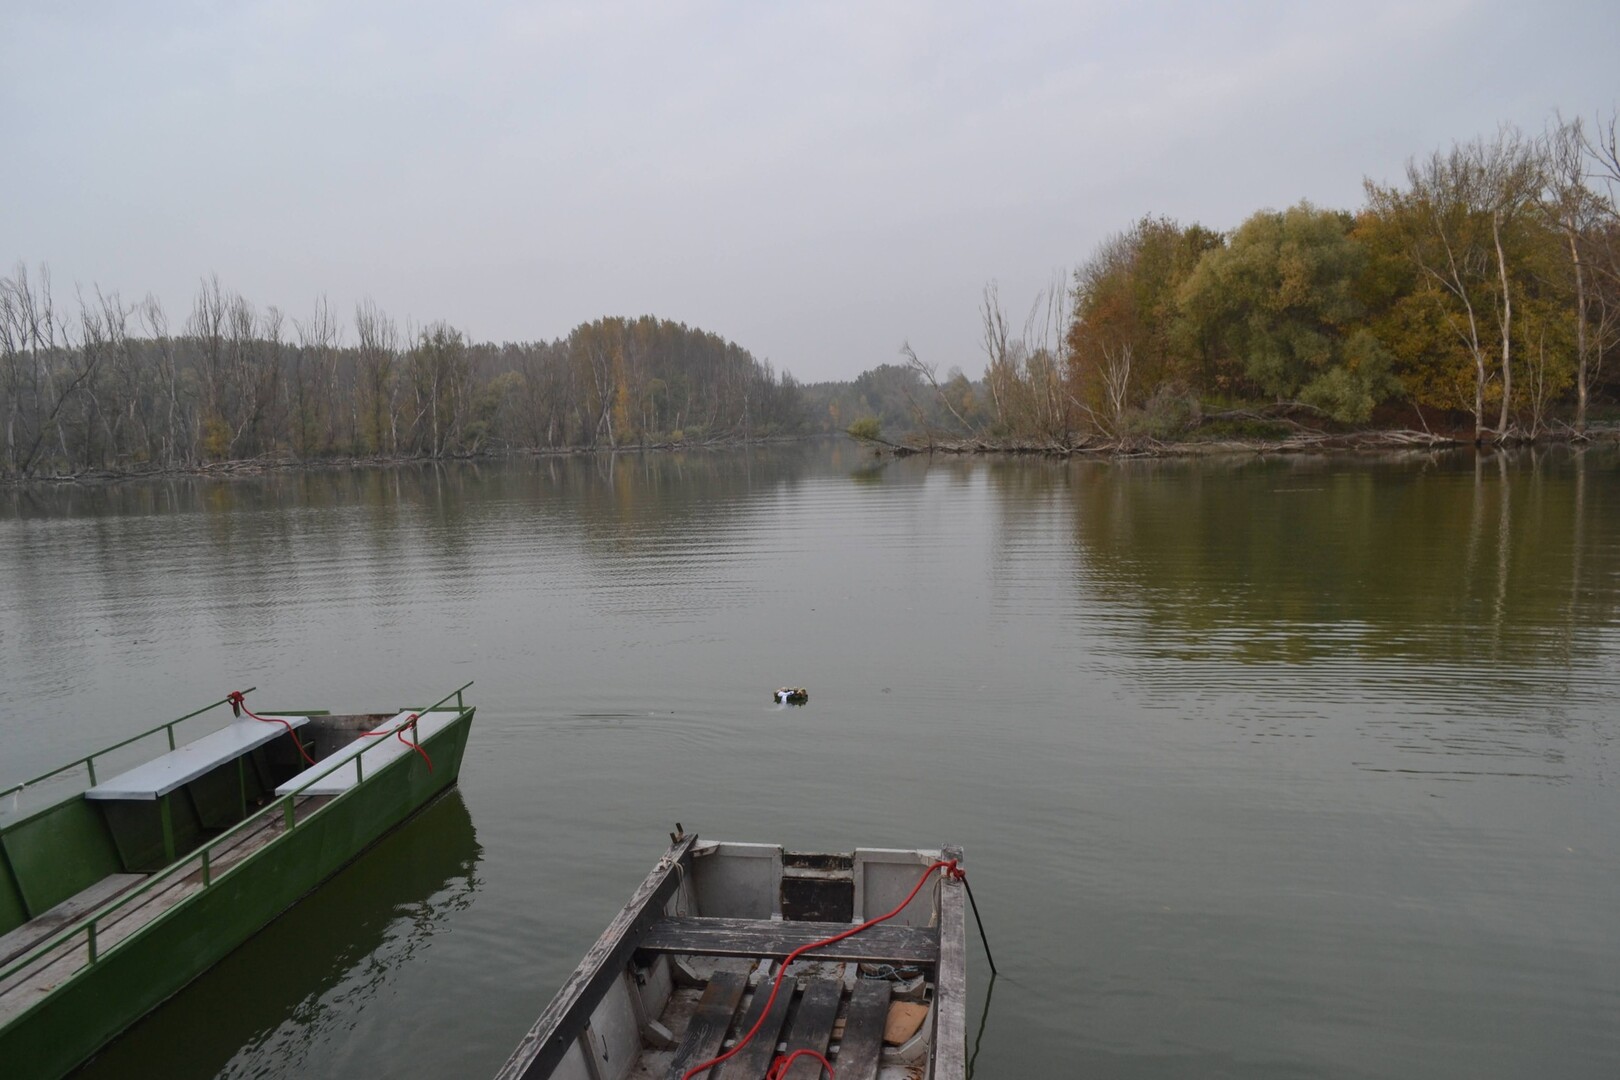 Lesz-e valaha közös Szigetköz–Csallóköz Nemzeti Parkunk a Duna mentén? 